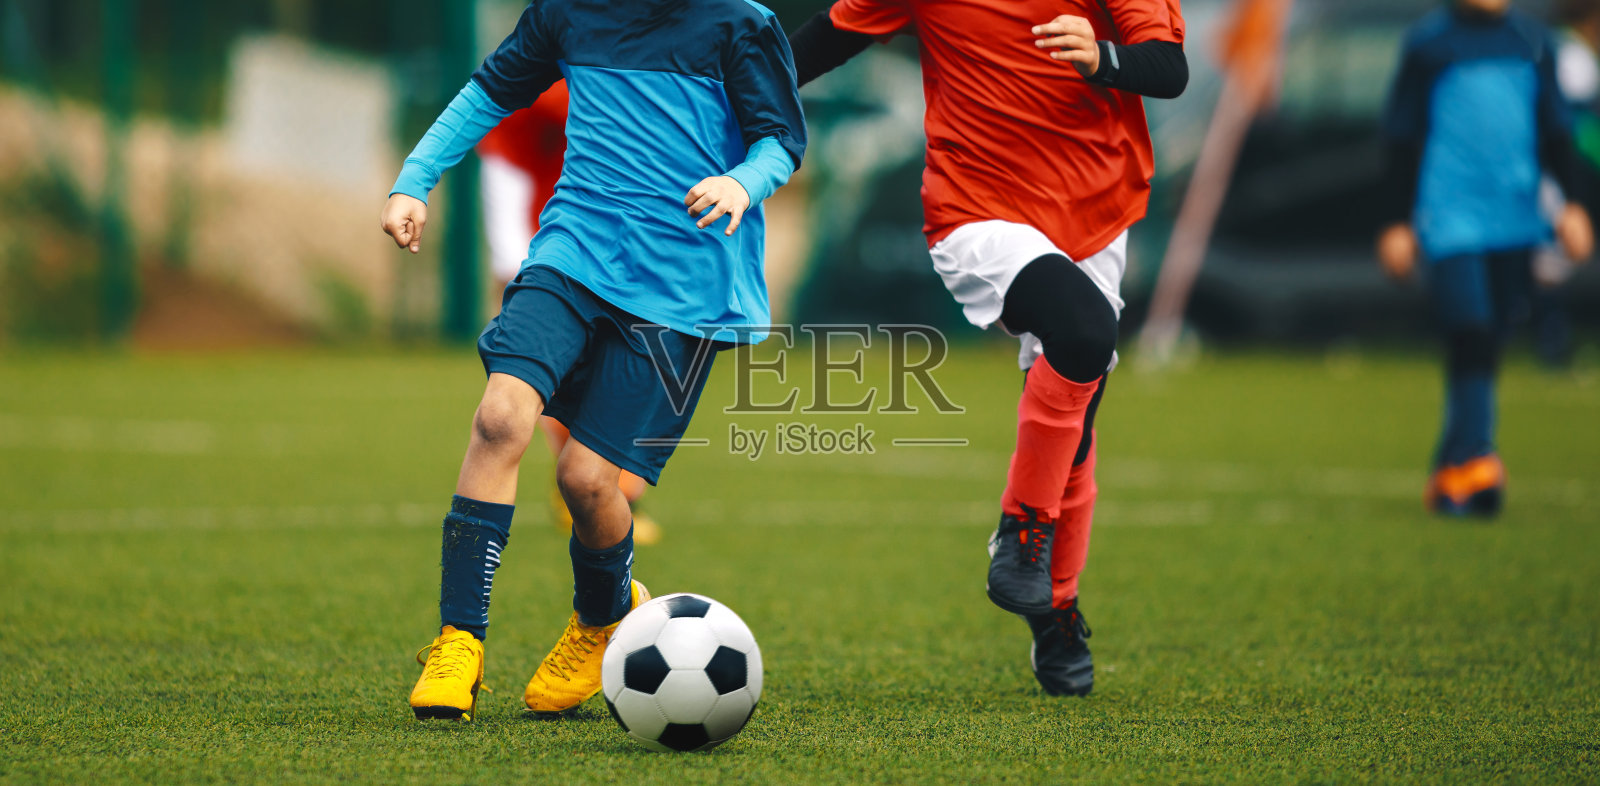 青年足球锦标赛。青年运动员在草地体育场踢足球比赛。两名身穿红衫和蓝衫的少年足球运动员争夺足球照片摄影图片